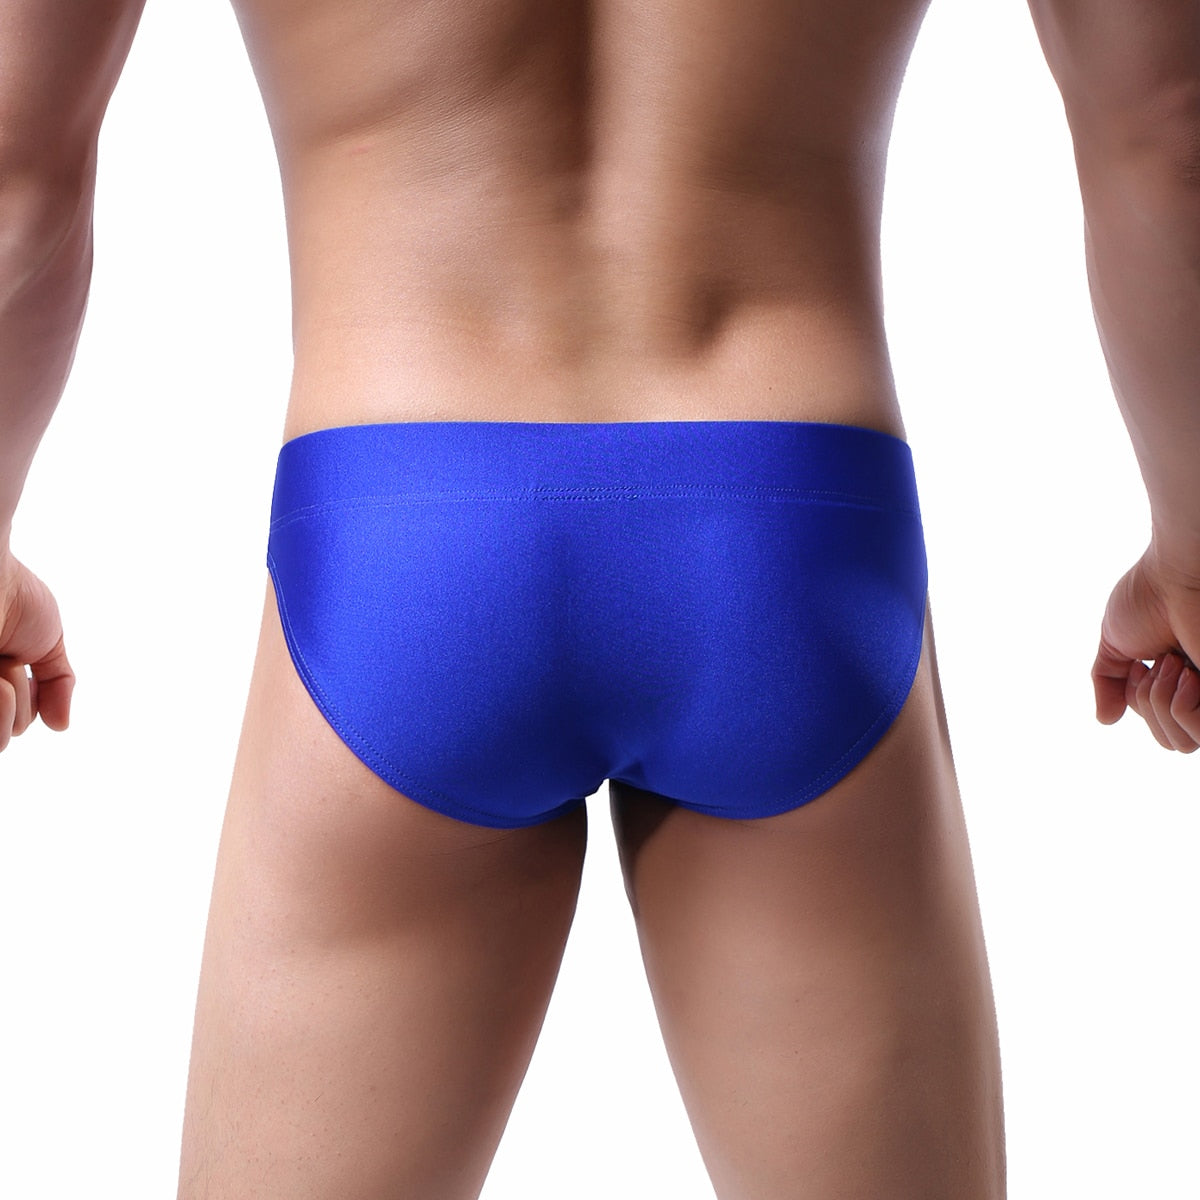 Free Men's Seamless Brief No Show Underwear - Blue Rear